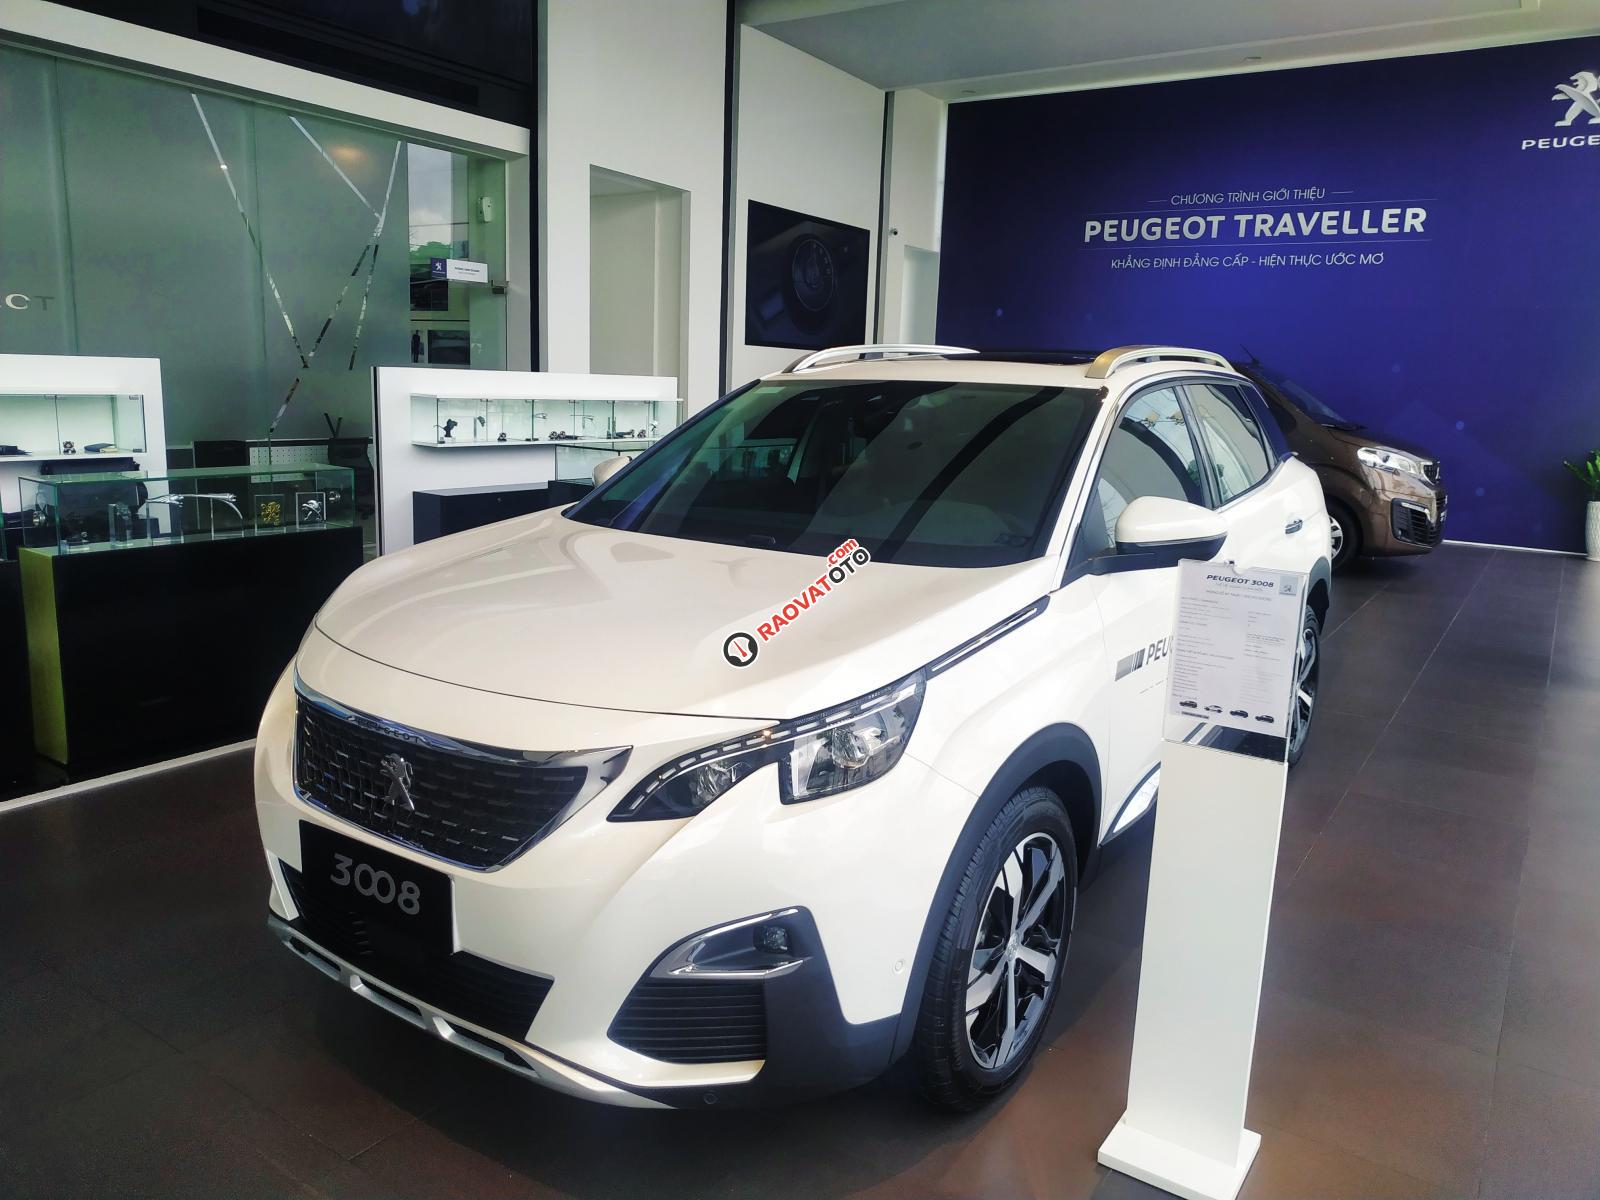 Cần bán xe Peugeot 5008 1.6AT đời 2019 new 100%, màu trắng, giá chỉ 1 tỷ 349 triệu đồng-3